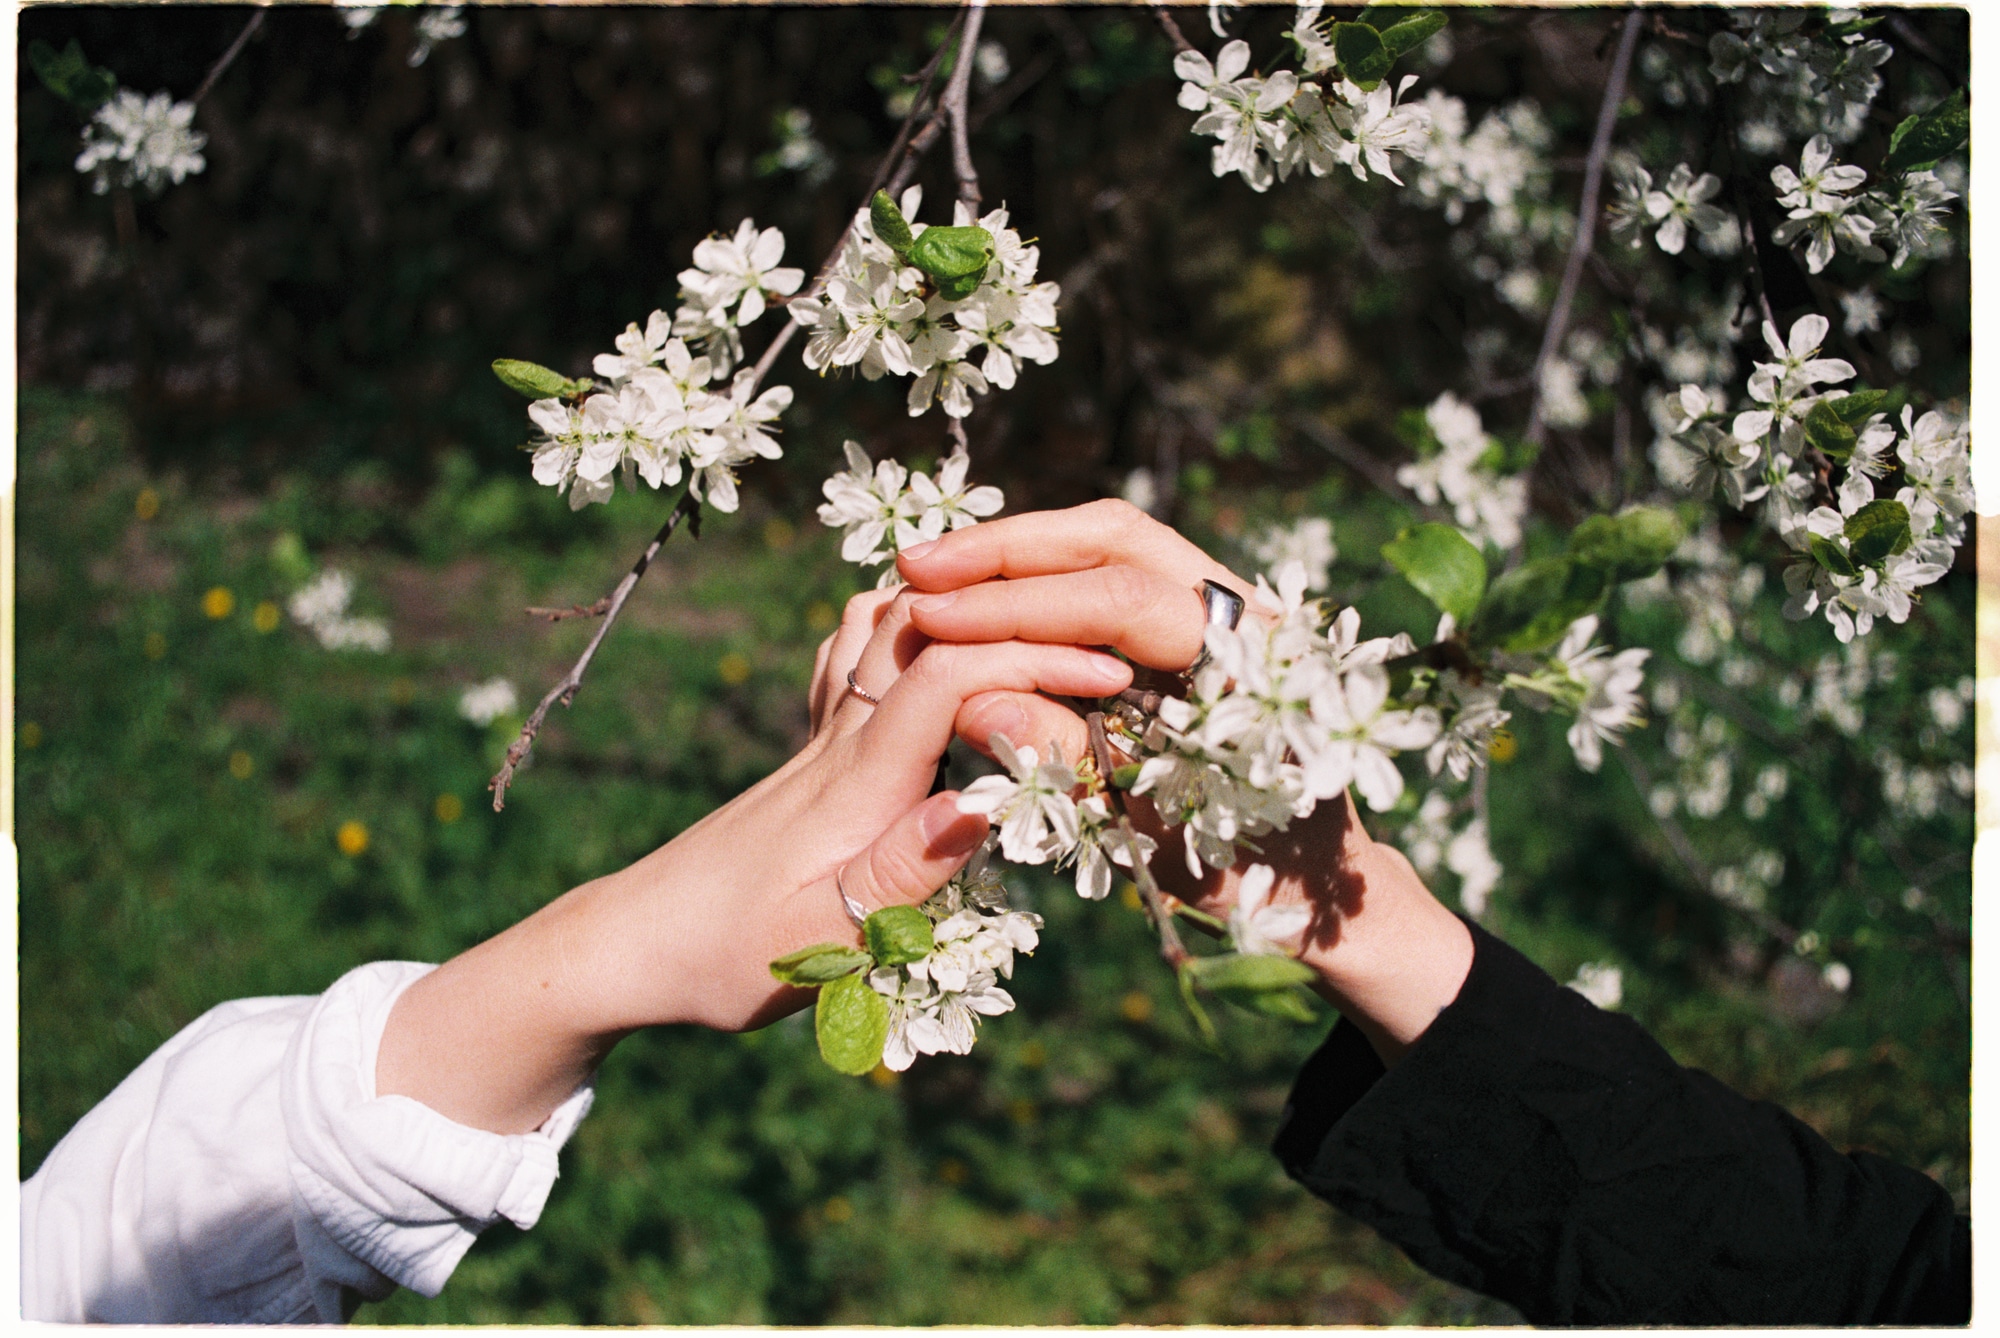 Frida og kjæresten hennes holder hender rundt en blomst.